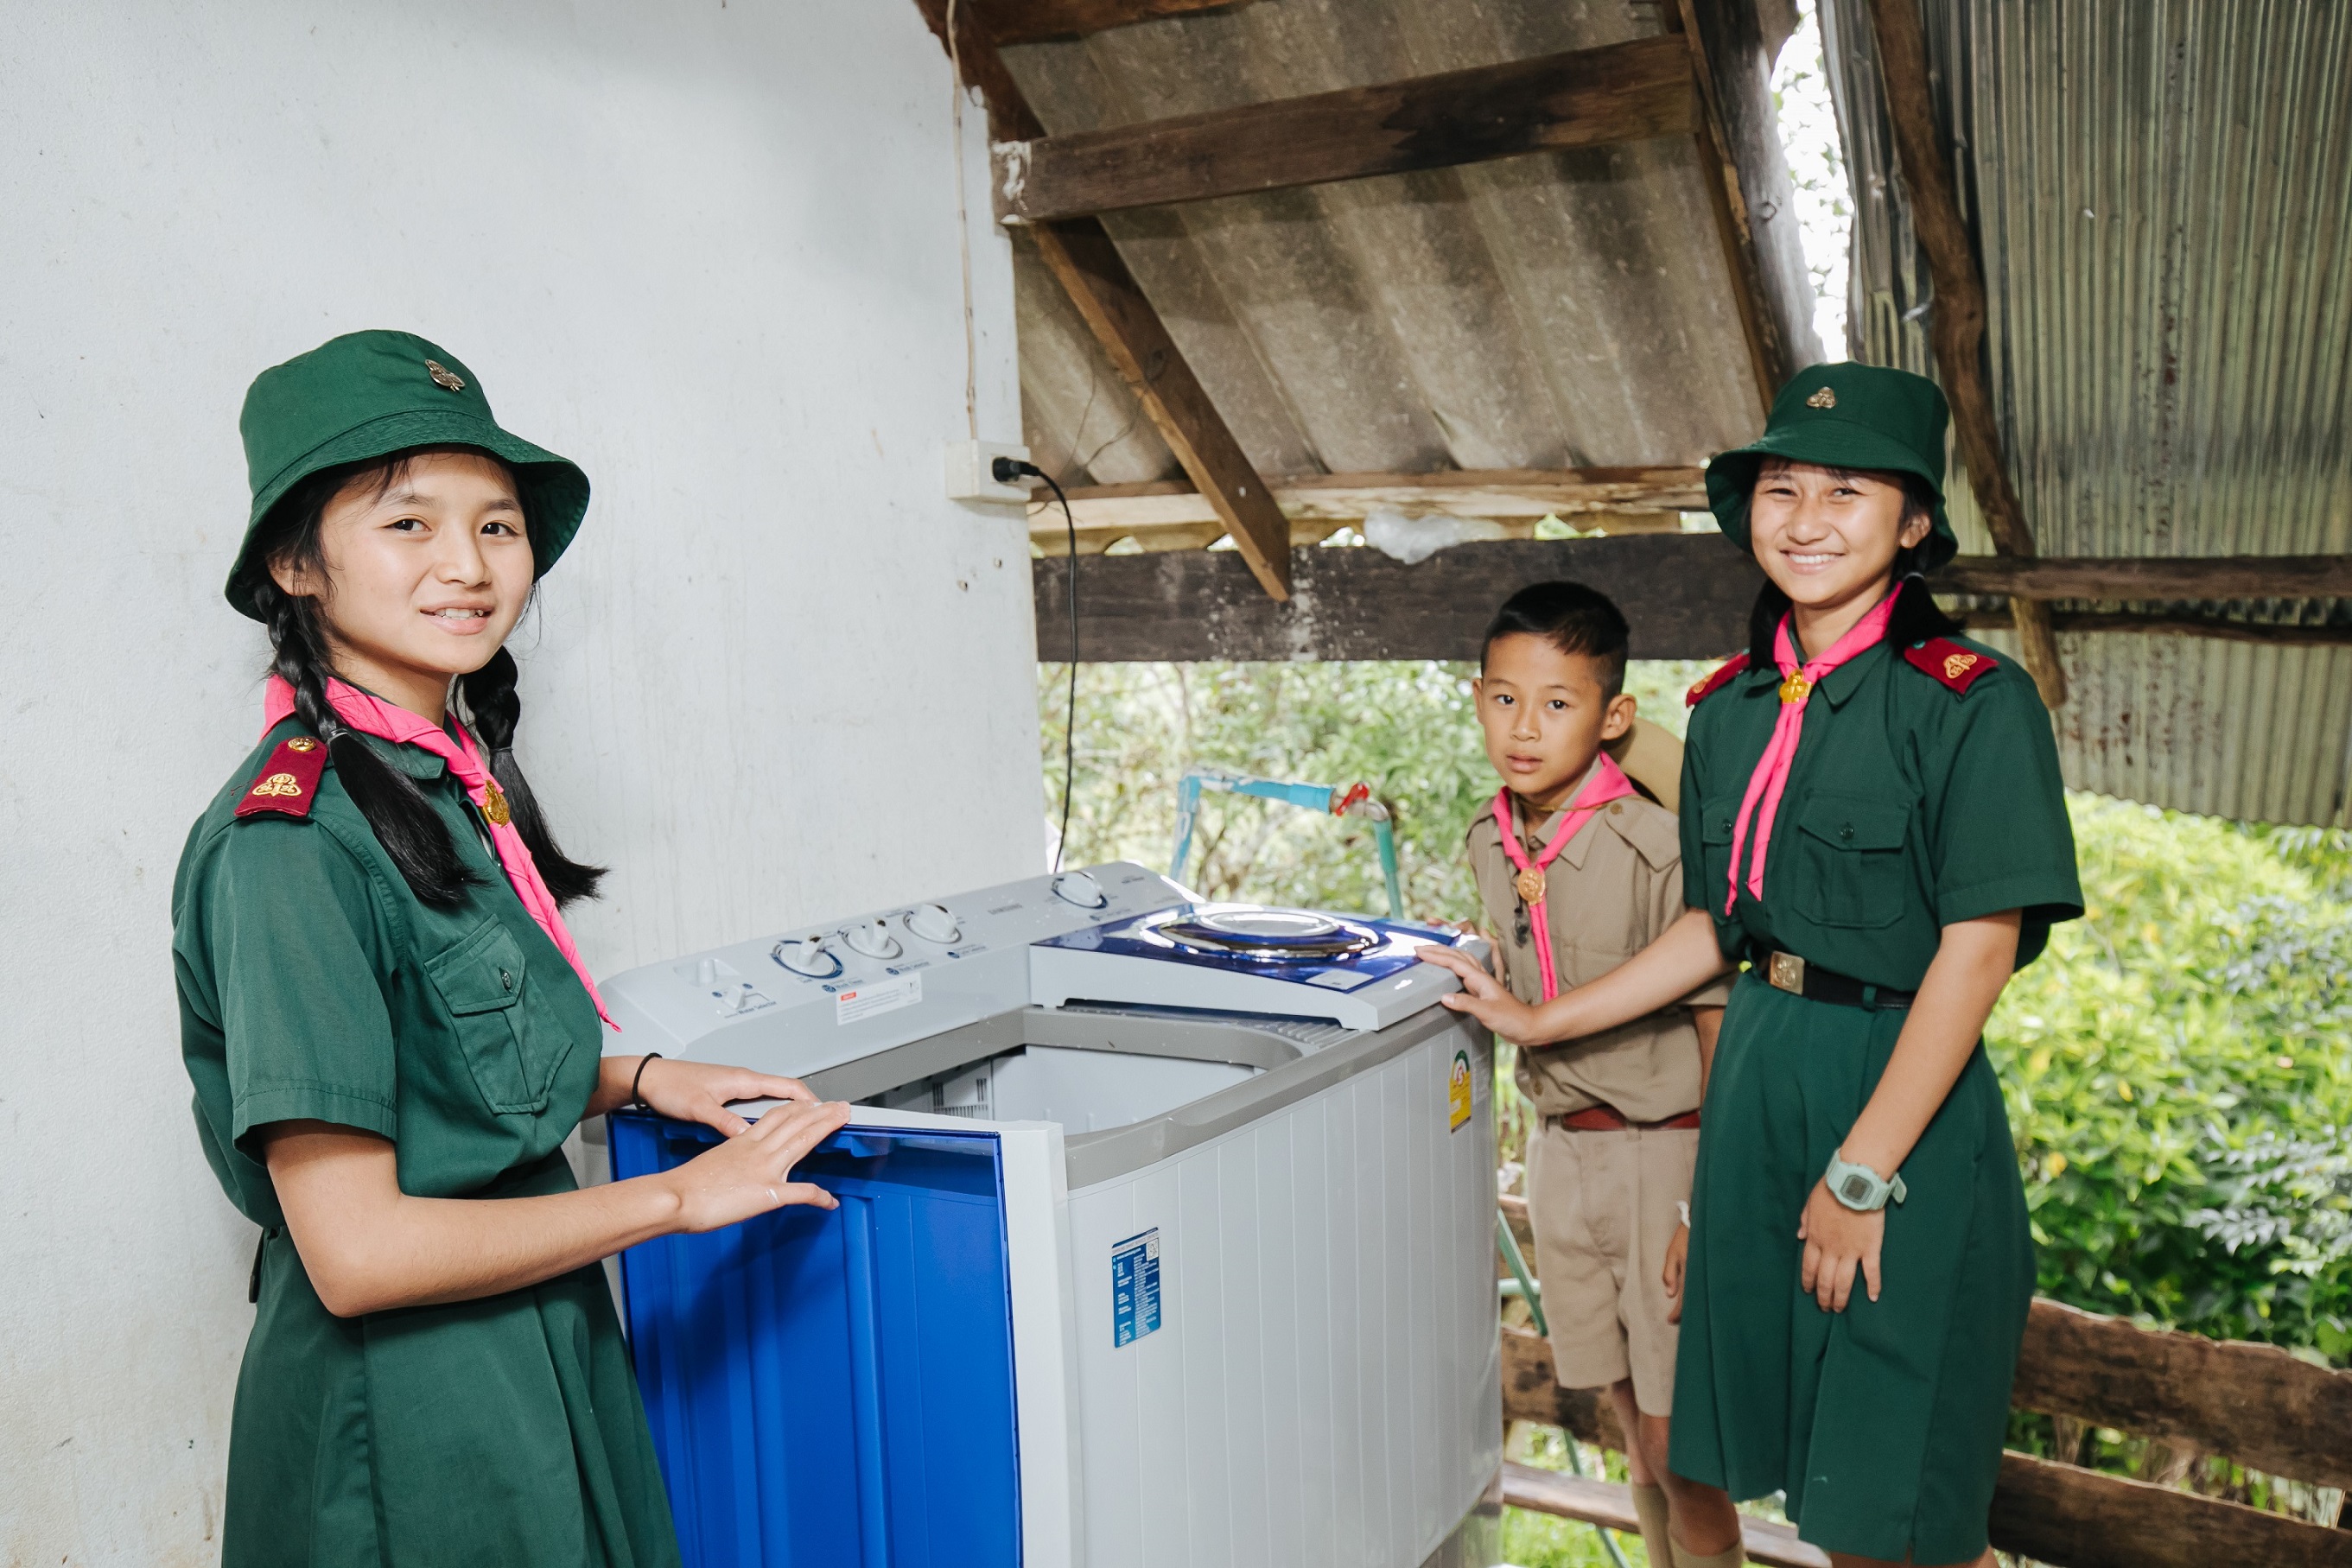 학생들이 웃는 얼굴로 삼성전자가 홍수 피해 지역에 기증한 세탁기를 둘러싸고 있다. 